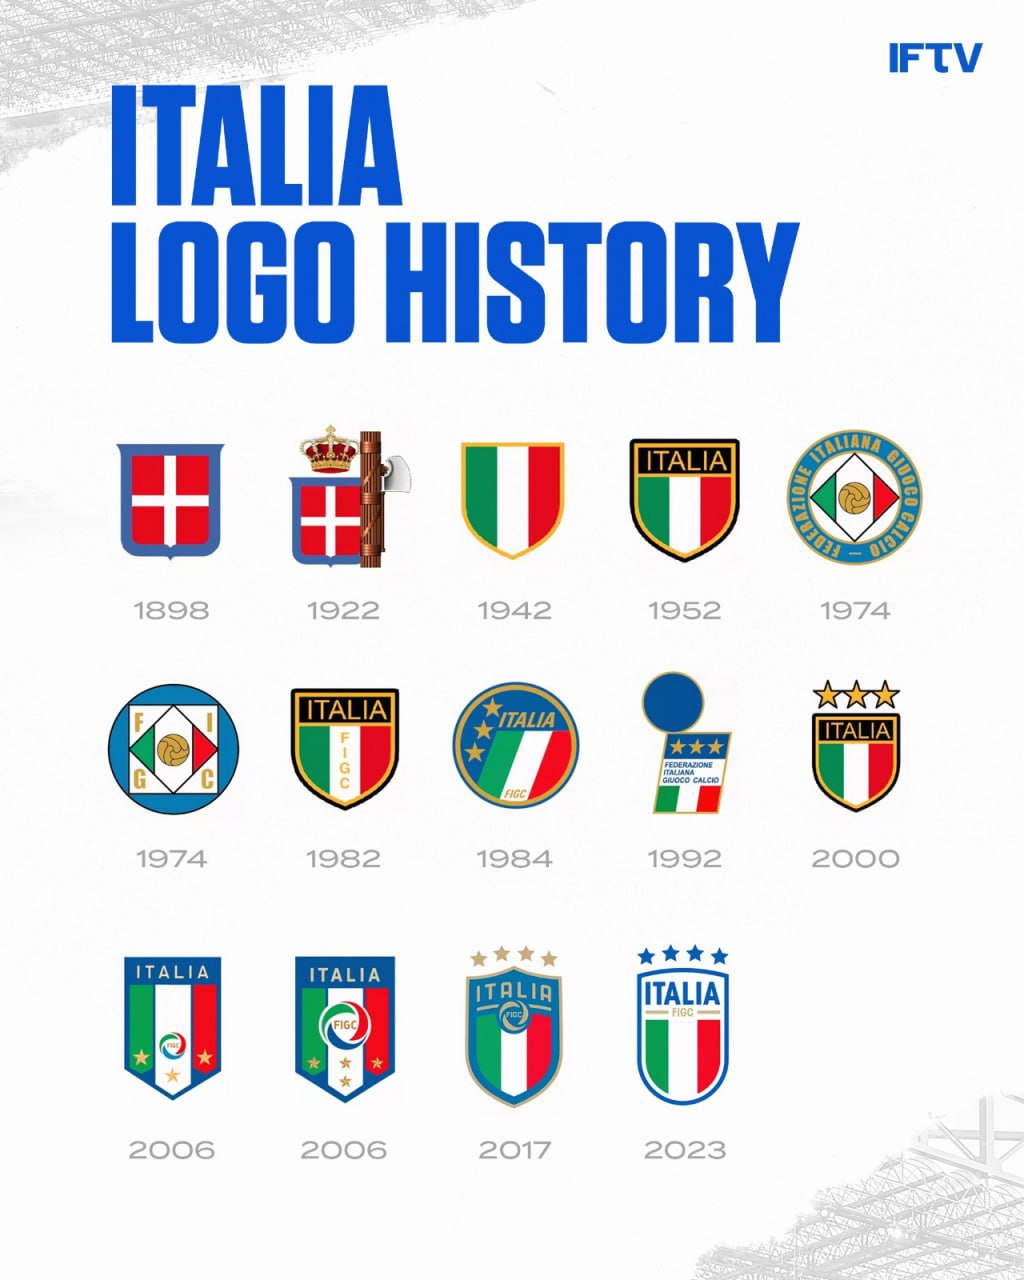 لوگو جدید تیم ملی ایتالیا رونمایی شد